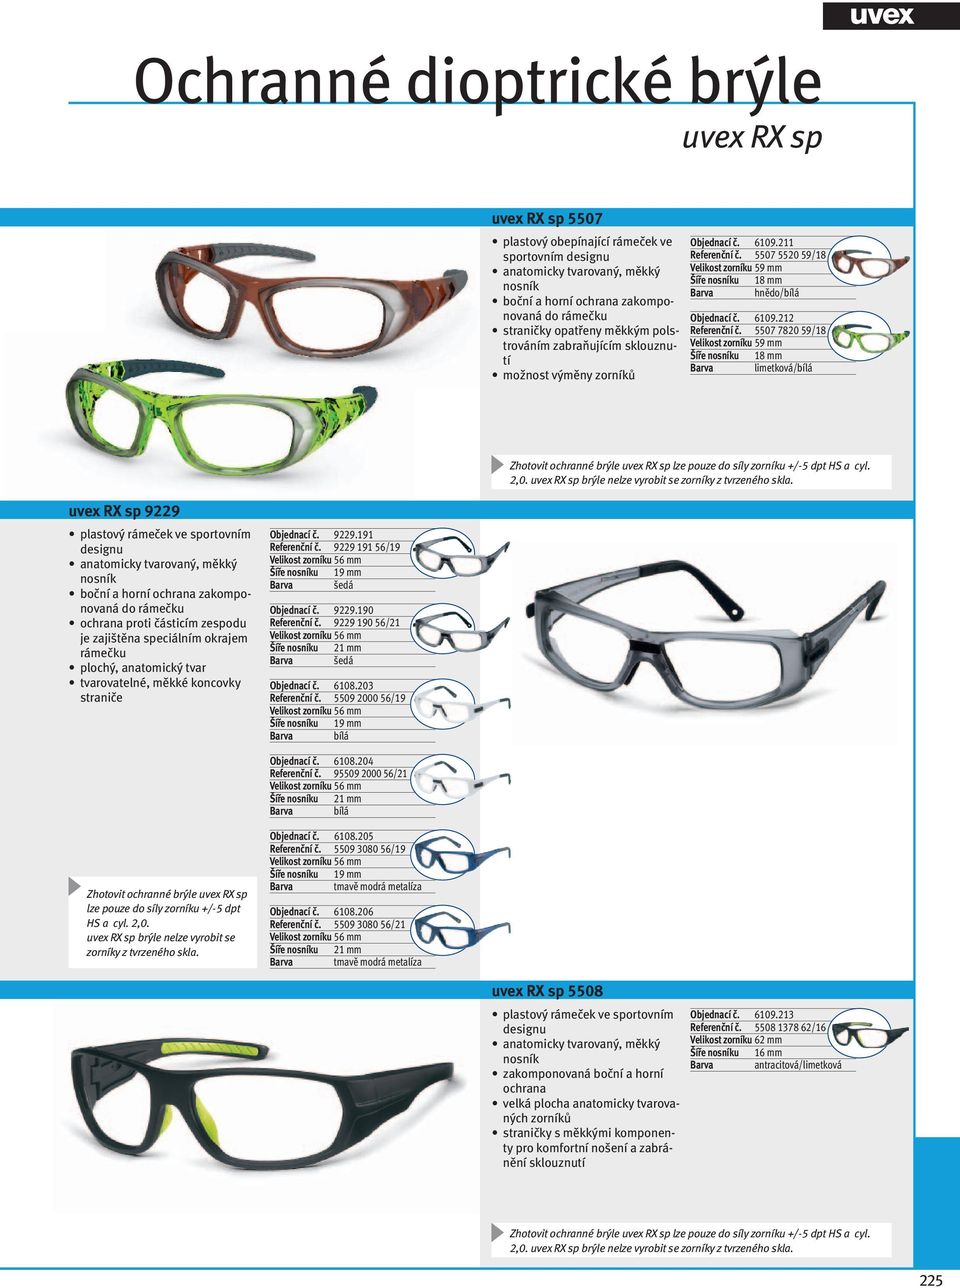 5507 7820 59/18 Velikost zorníku 59 mm Šíře nosníku 18 mm limetková/bílá Zhotovit ochranné brýle uvex RX sp lze pouze do síly zorníku +/-5 dpt HS a cyl. 2,0.